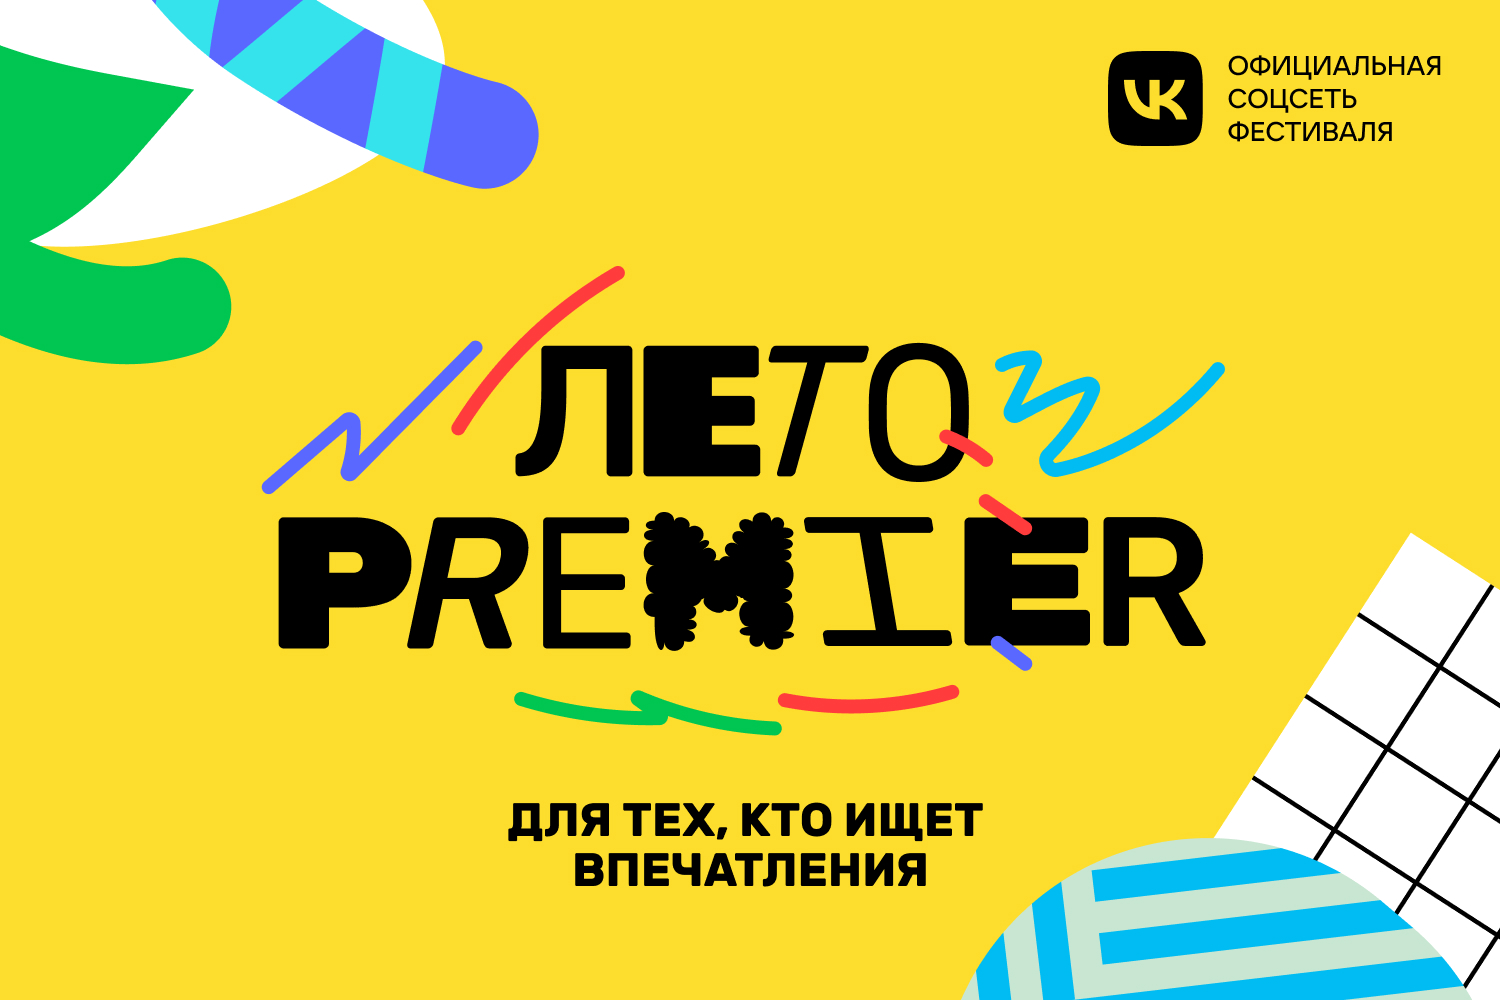 Онлайн-кинотеатр Premier объявил о проведении всероссийского фестиваля (фото 1)